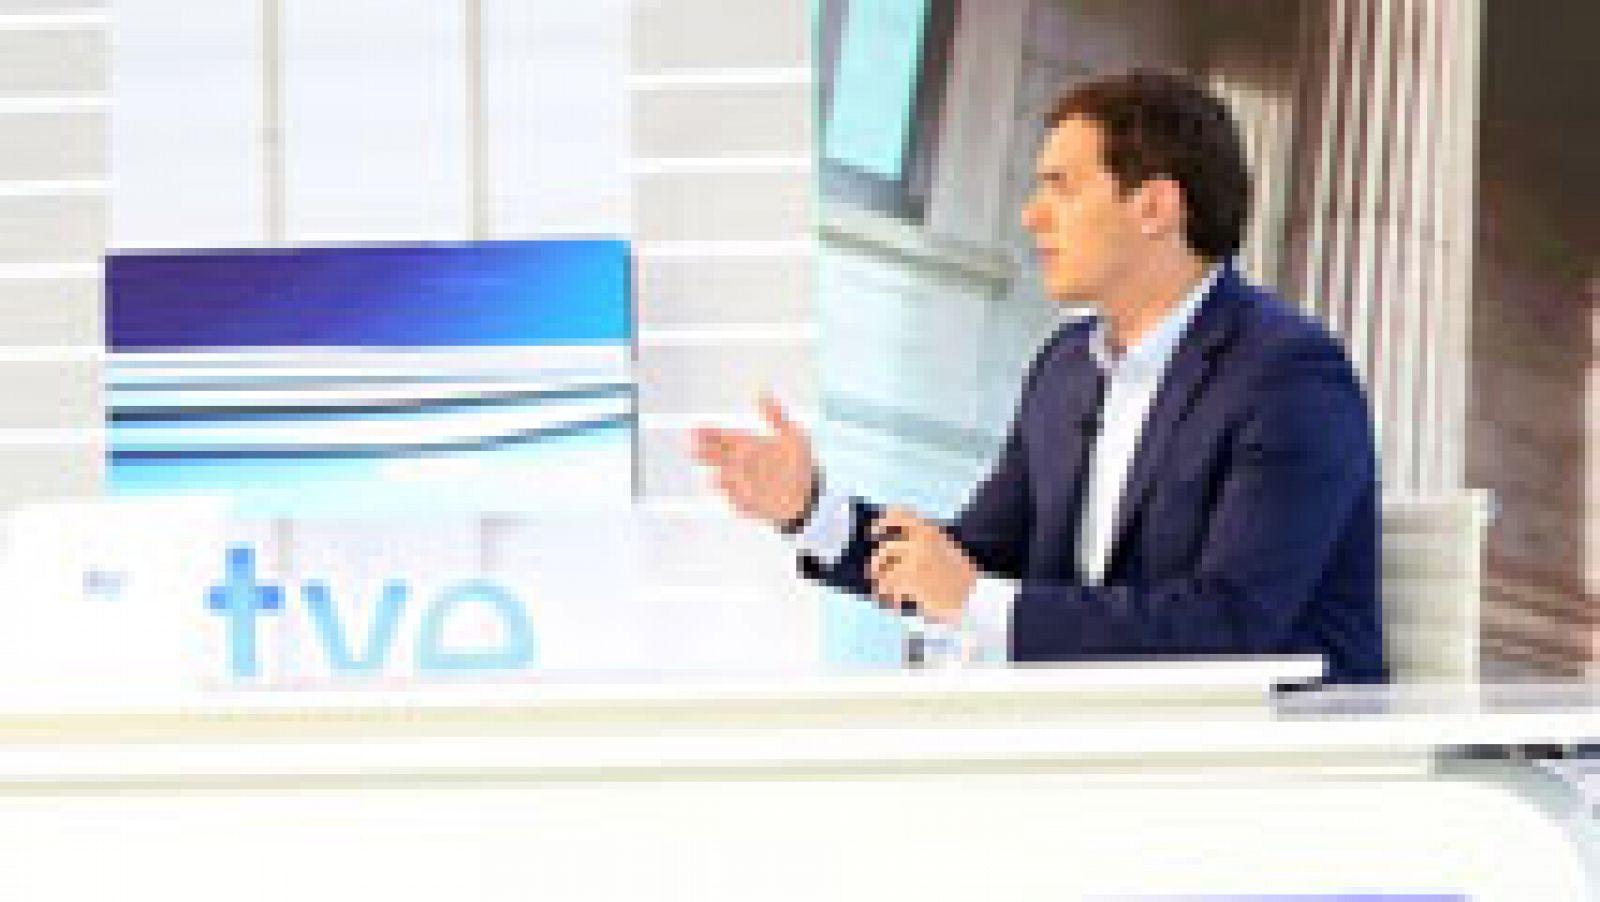 Telediario 1: Rivera sobre si apoyaría un gobierno con Rajoy: "No voy a poner condiciones sobre las personas, sino sobre los contenidos" | RTVE Play